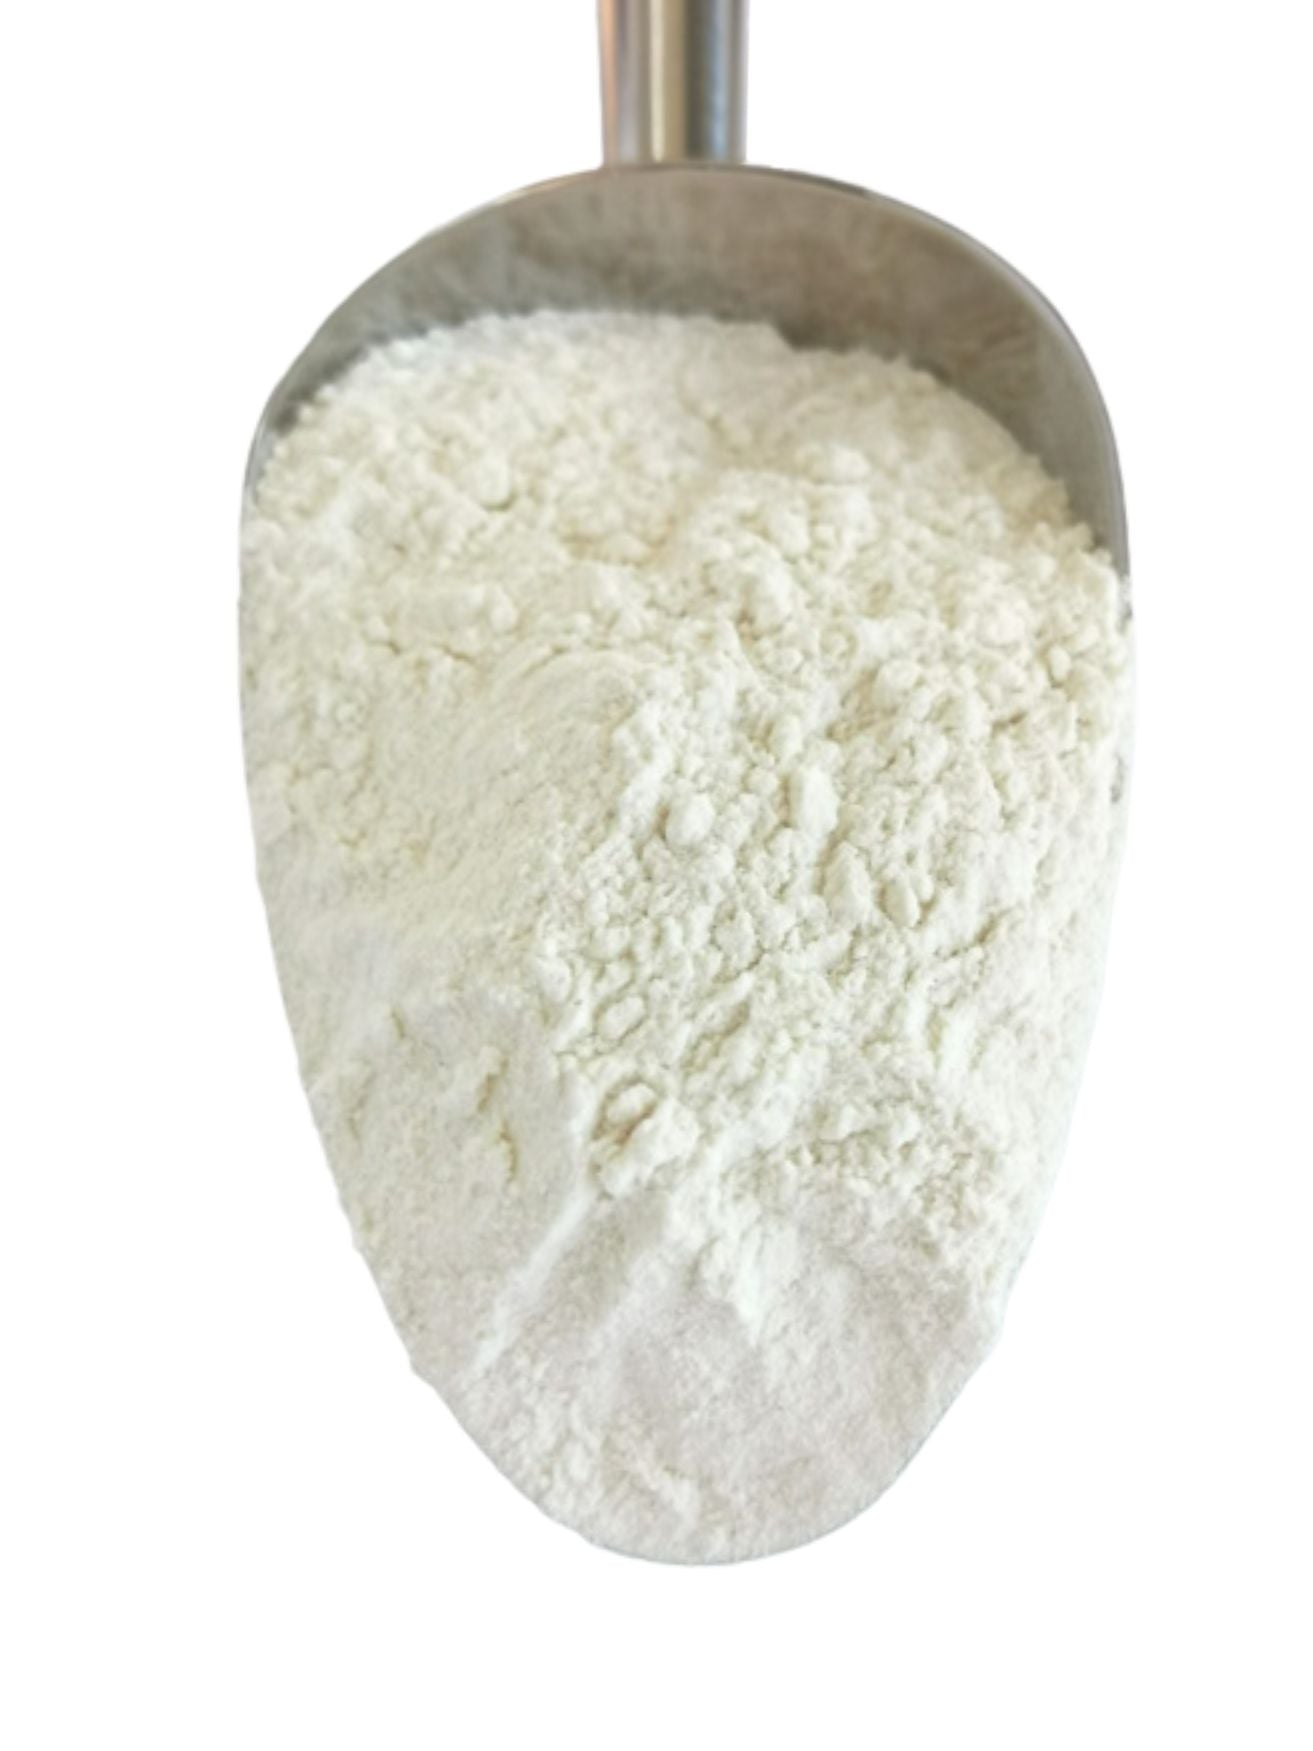 Standard White Flour